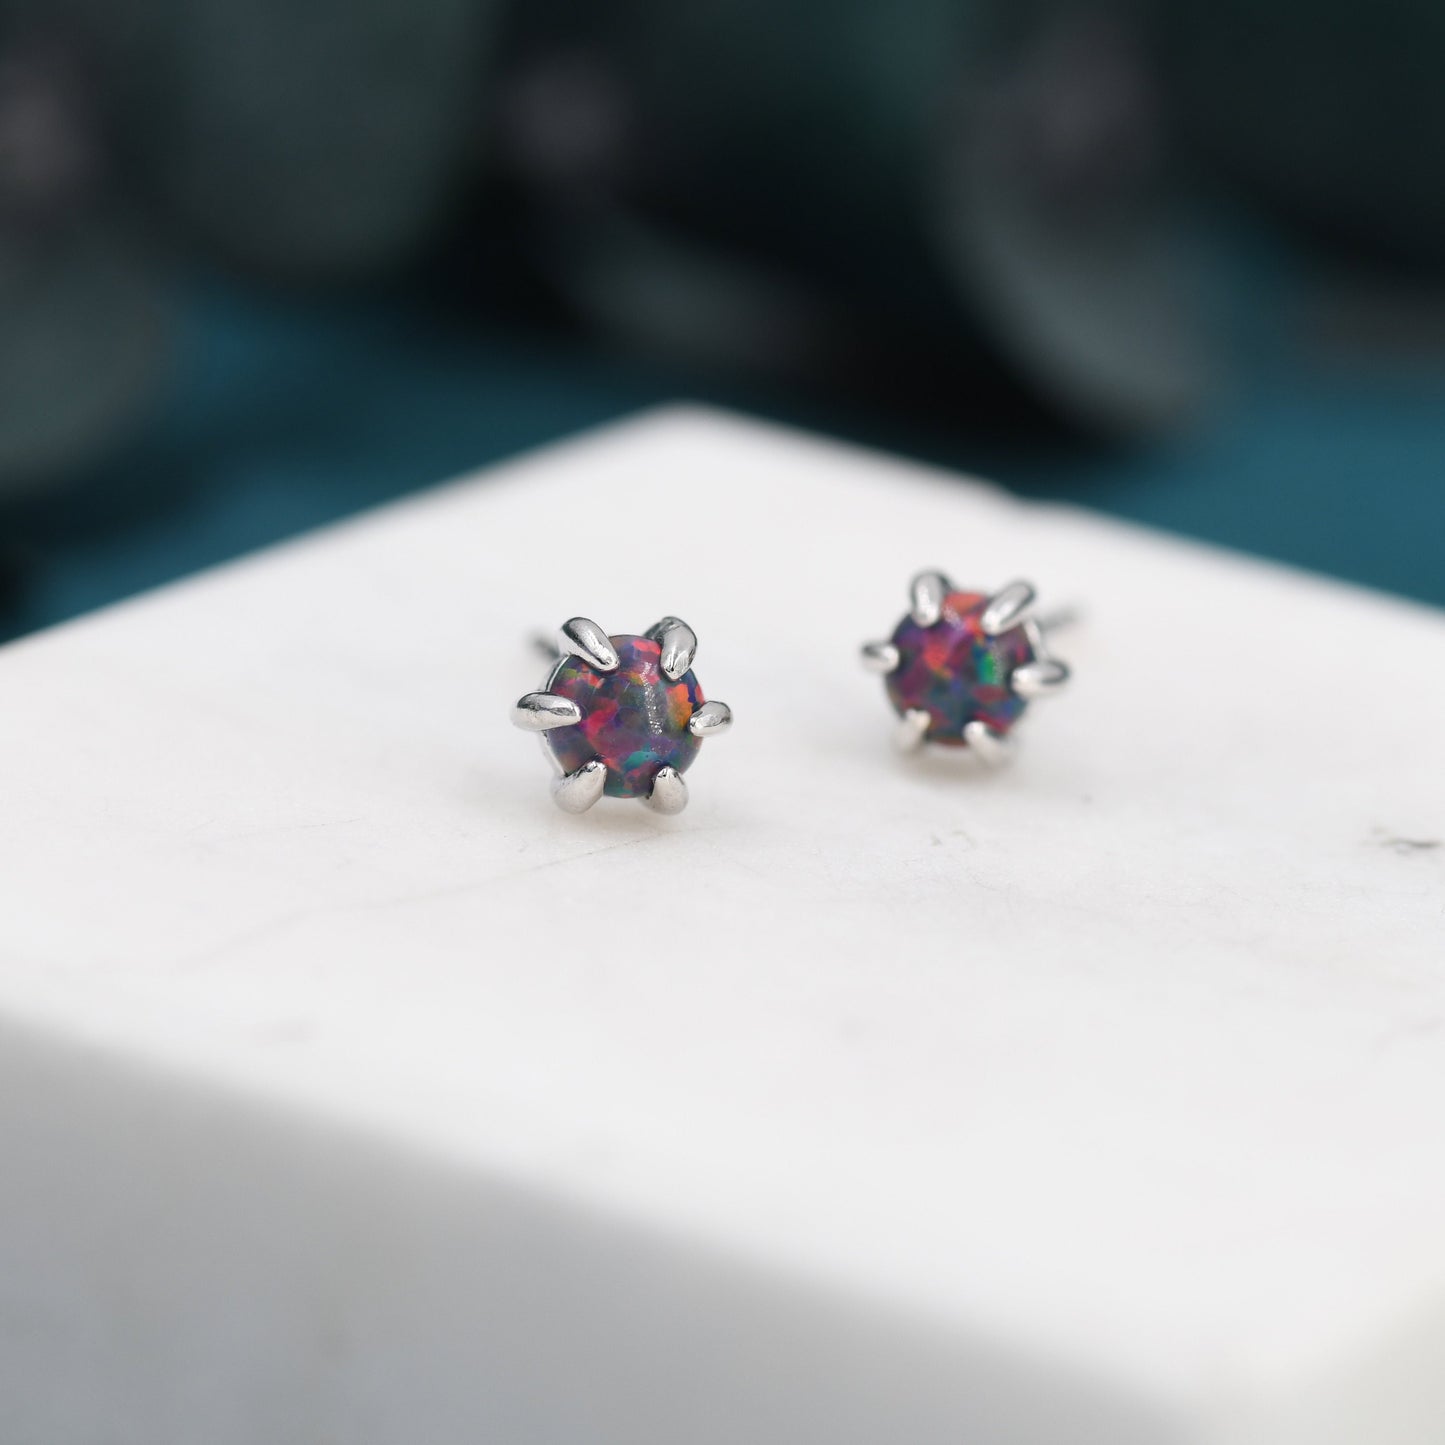 Cosmic Purple Opal Long Prong Stud Earrings in Sterling Silver, Silver or Gold, Opal Earrings, Tiny Opal Earrings, Dainty Opal Earrings